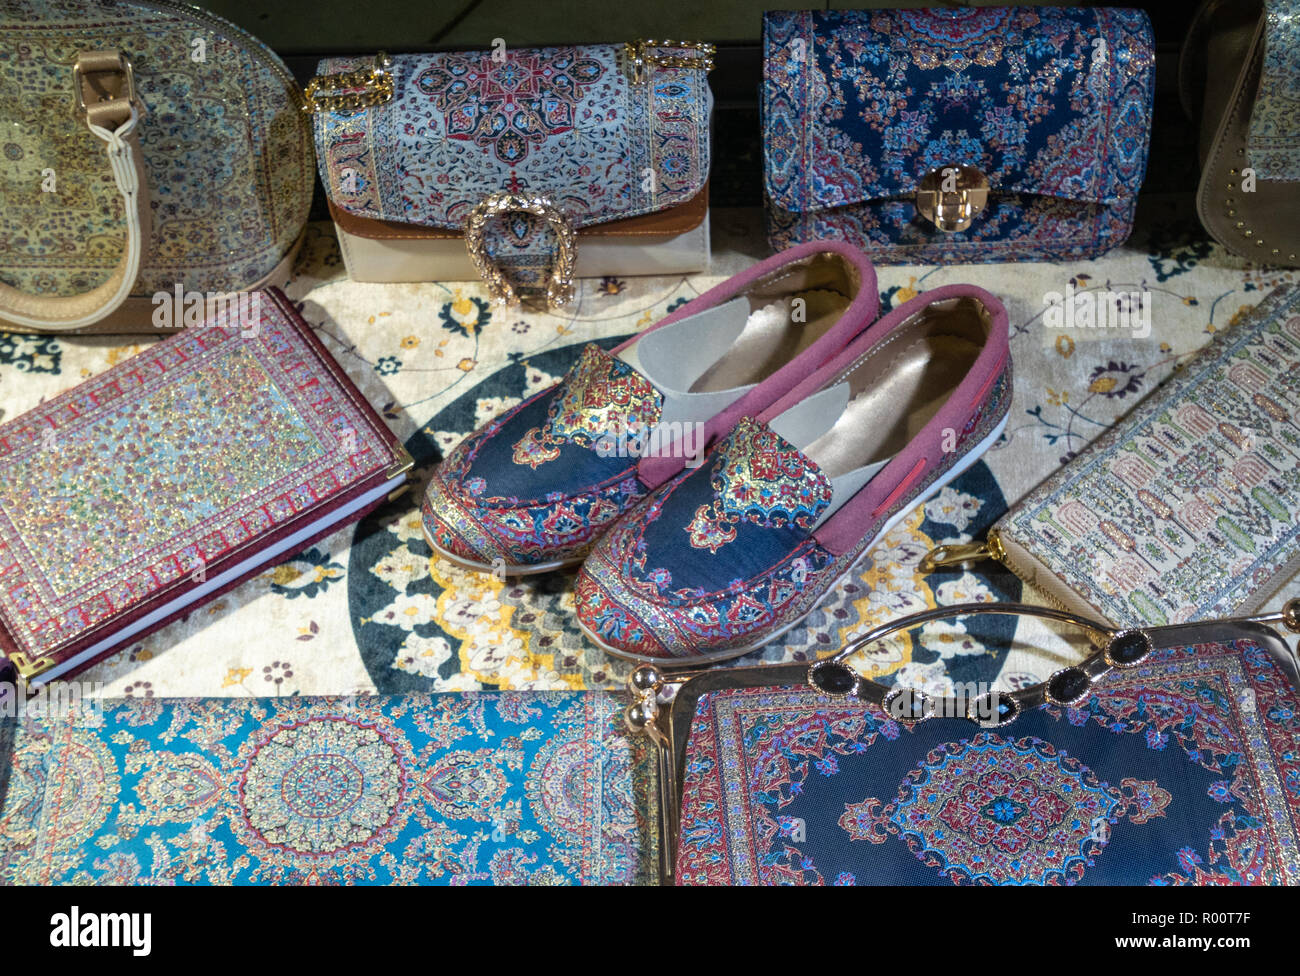 Handgefertigt Hausschuhe und Gitternetzen, Geldbeutel, Handtaschen, Taschen  im Nahen Osten Stil mit arabisch orientalische Muster Stockfotografie -  Alamy